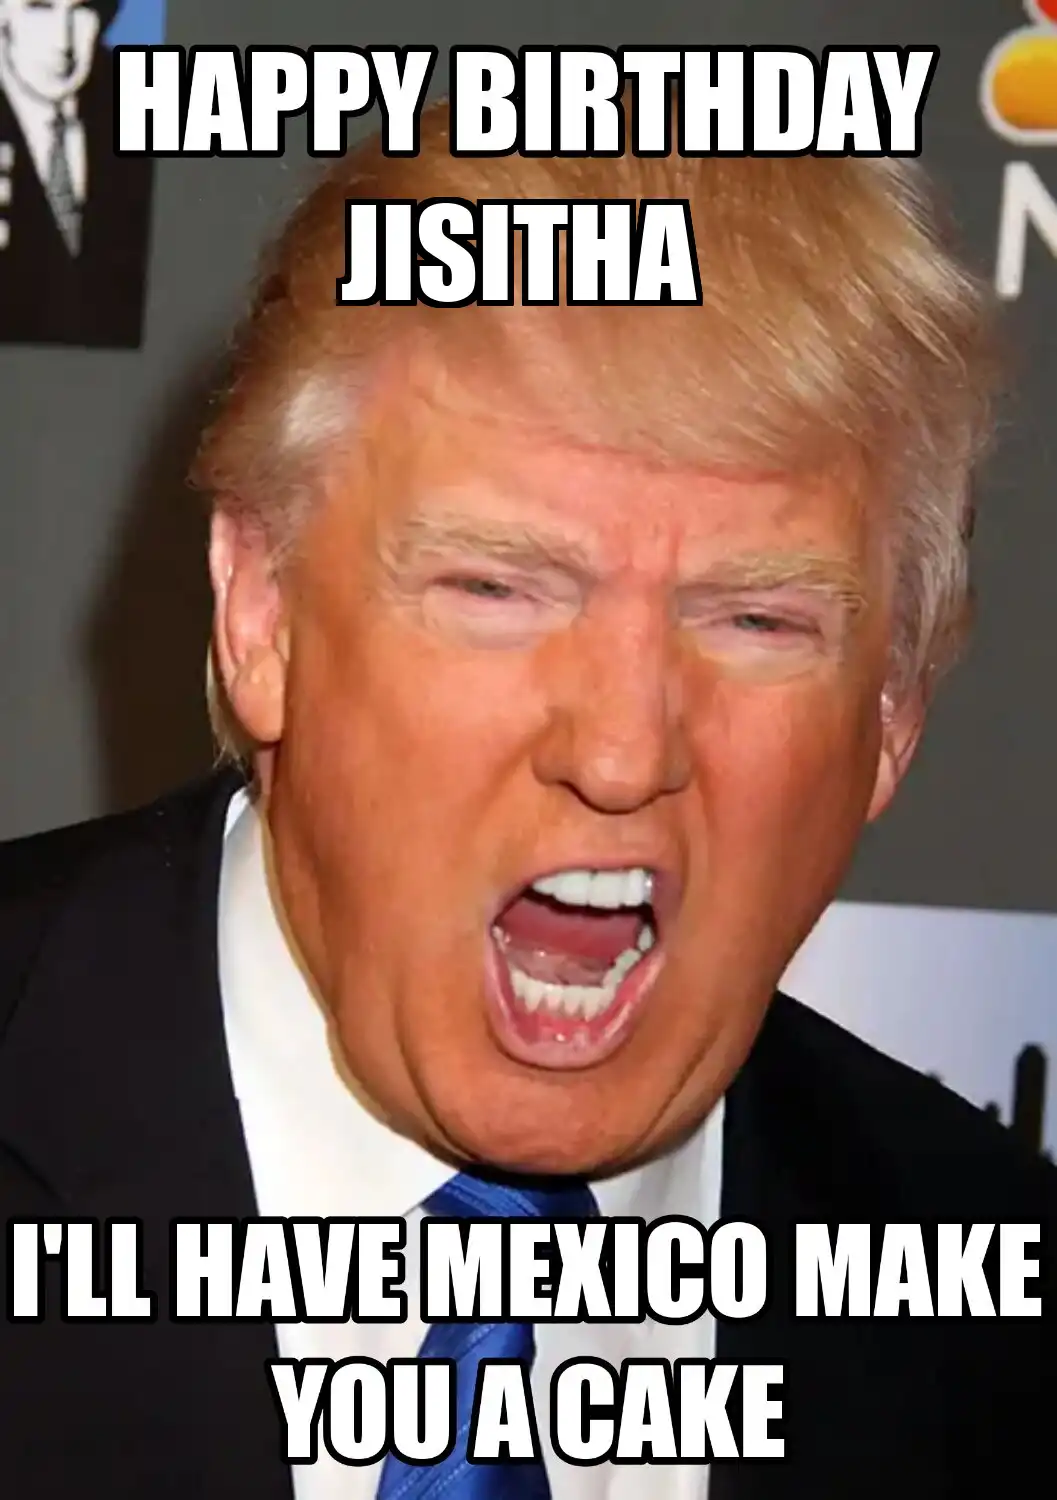 Happy Birthday Jisitha Mexico Make You A Cake Meme